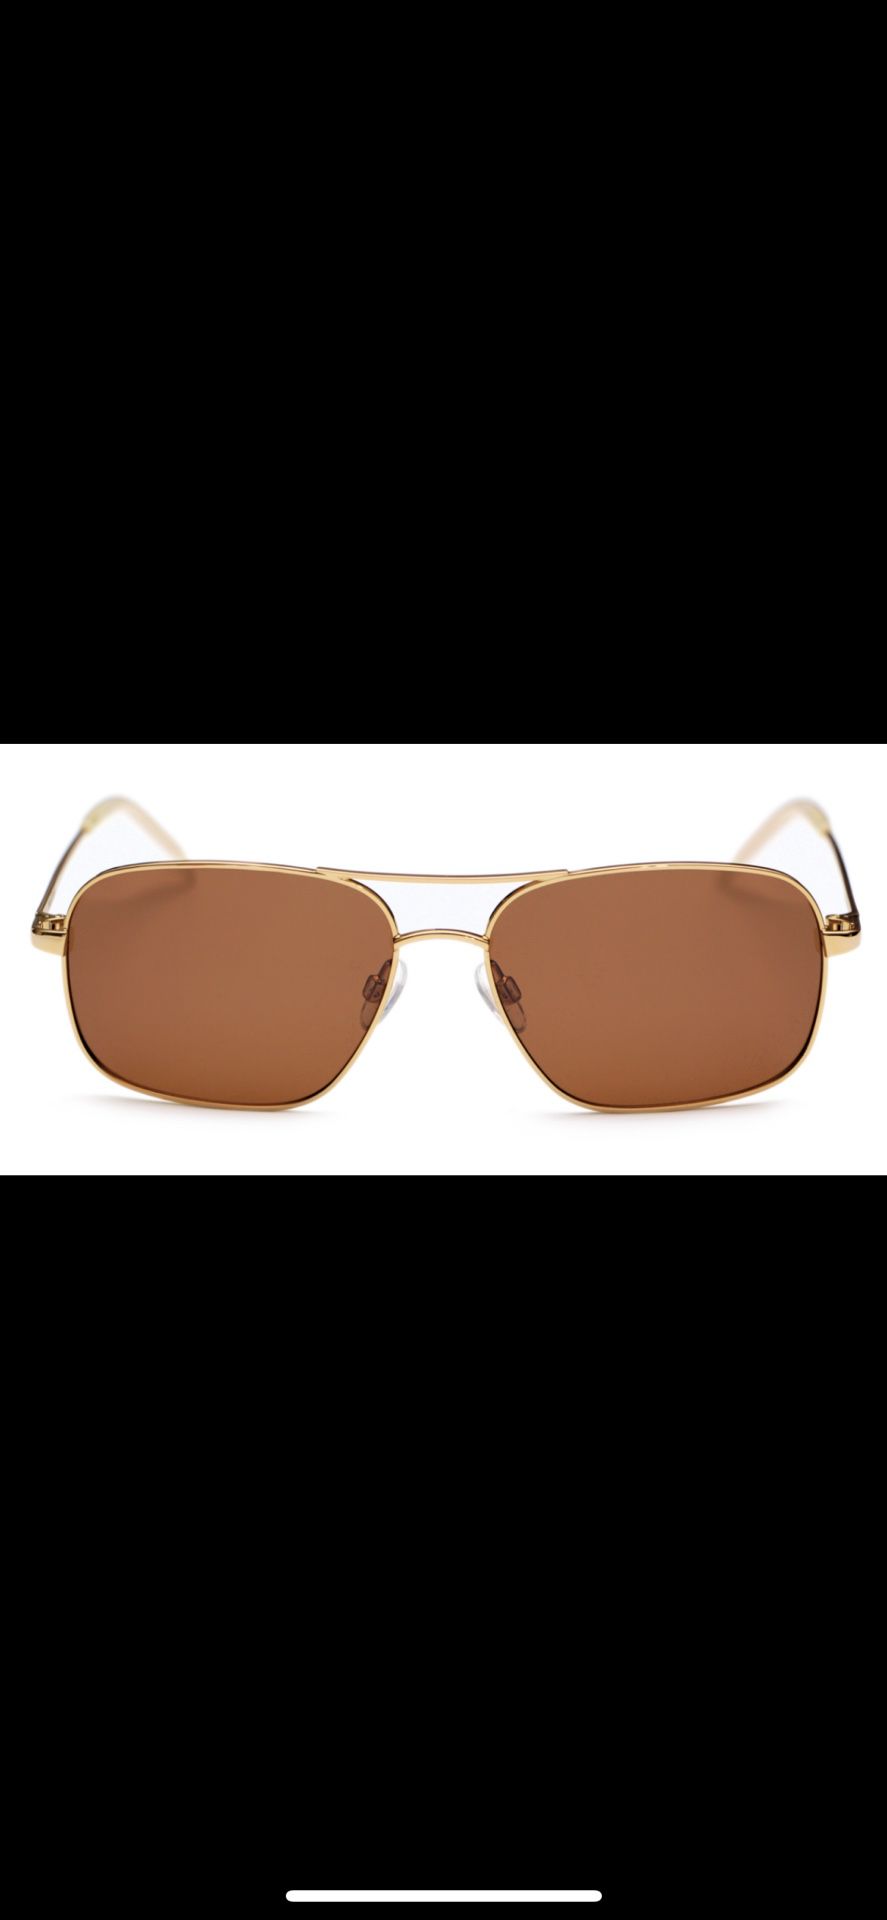 Magnoli Sunglasses (used)